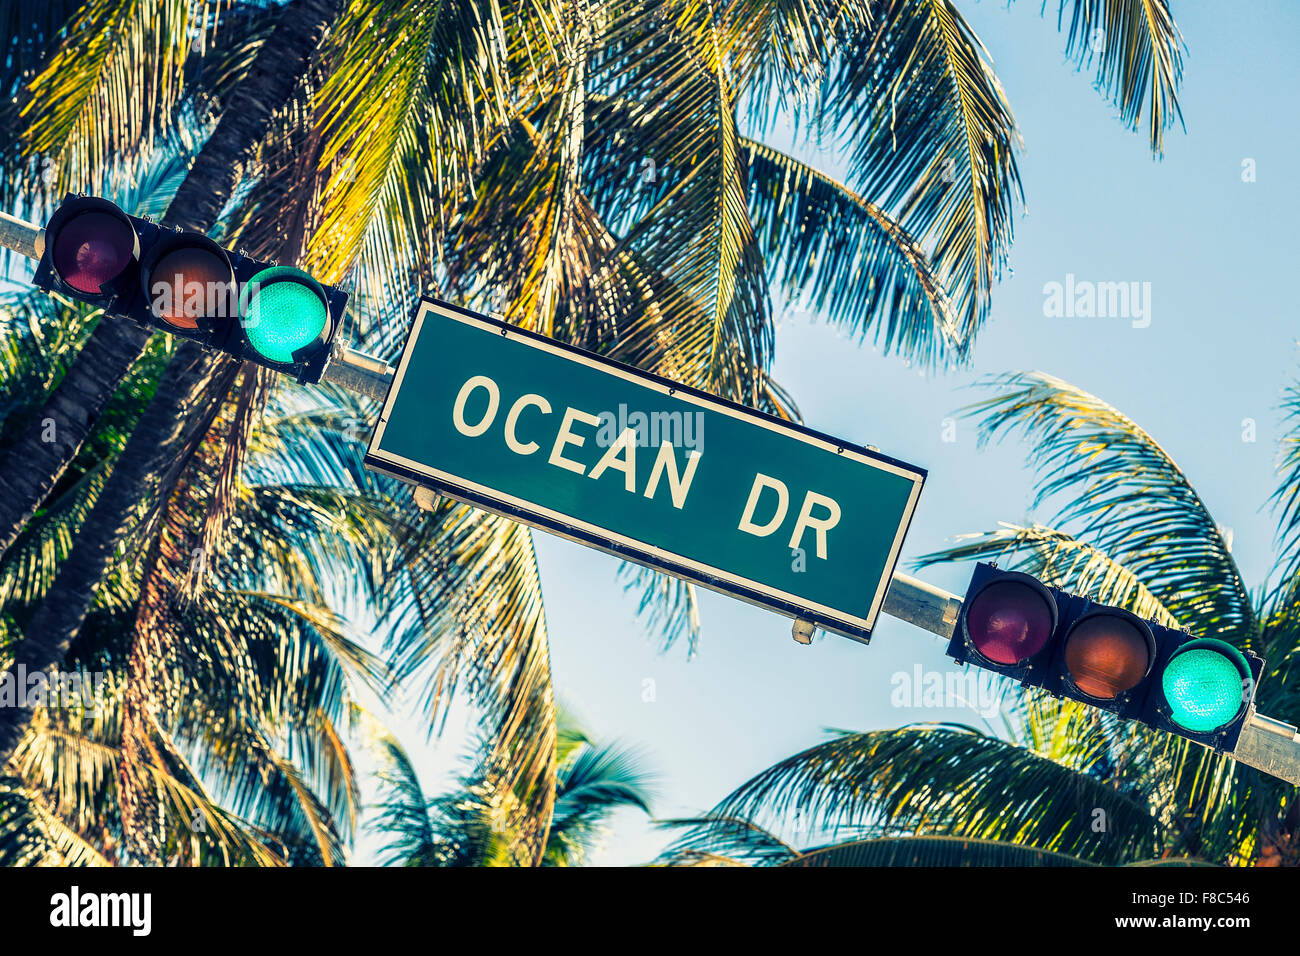 Ocean drive signe et feu de circulation Banque D'Images